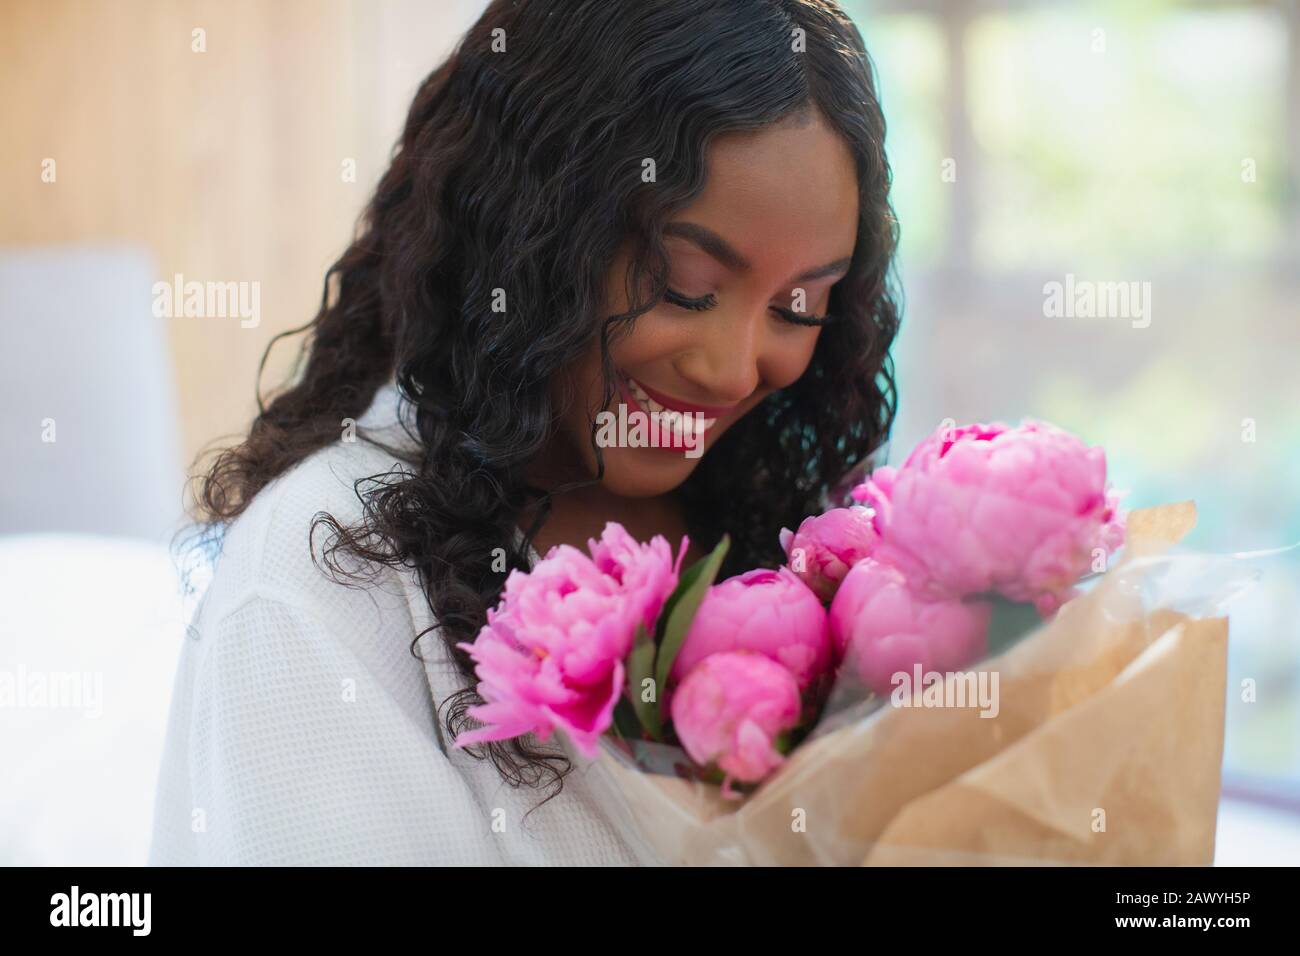 Glückliche junge Frau, die einen pinkfarbenen Pony-Bouquet erhält Stockfoto